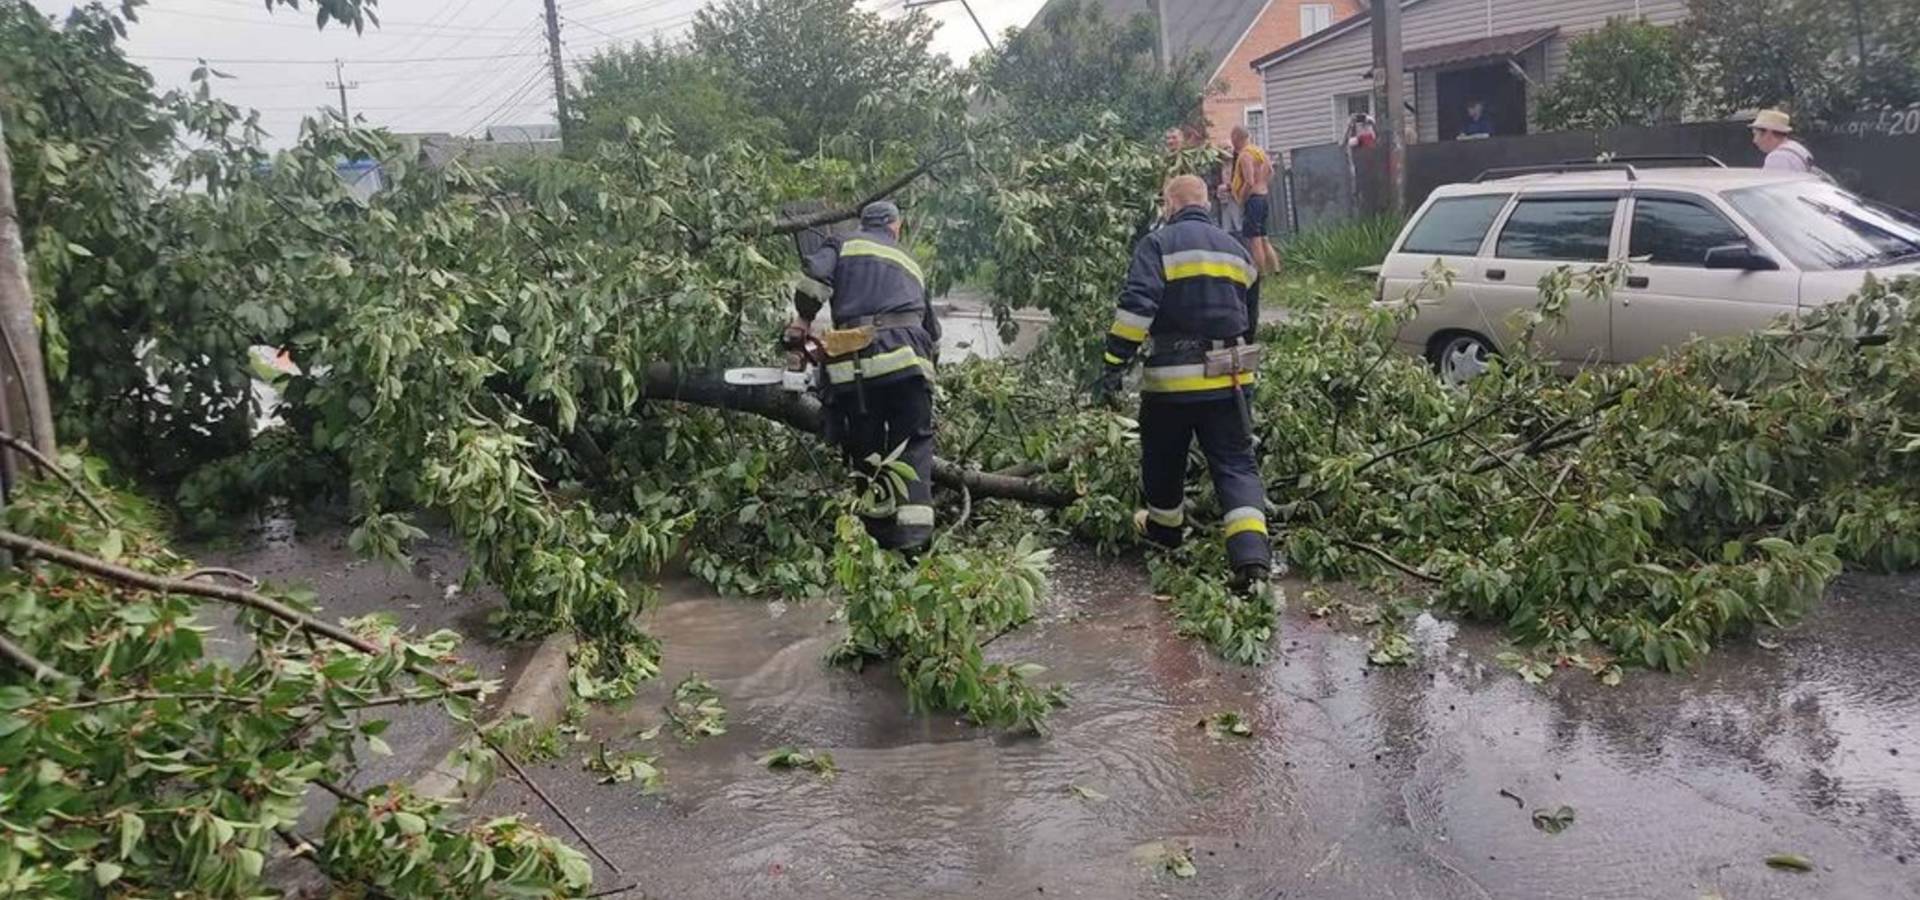 Наслідки грози на Вінниччині: повалені дерева та пожежа від удару блискавки